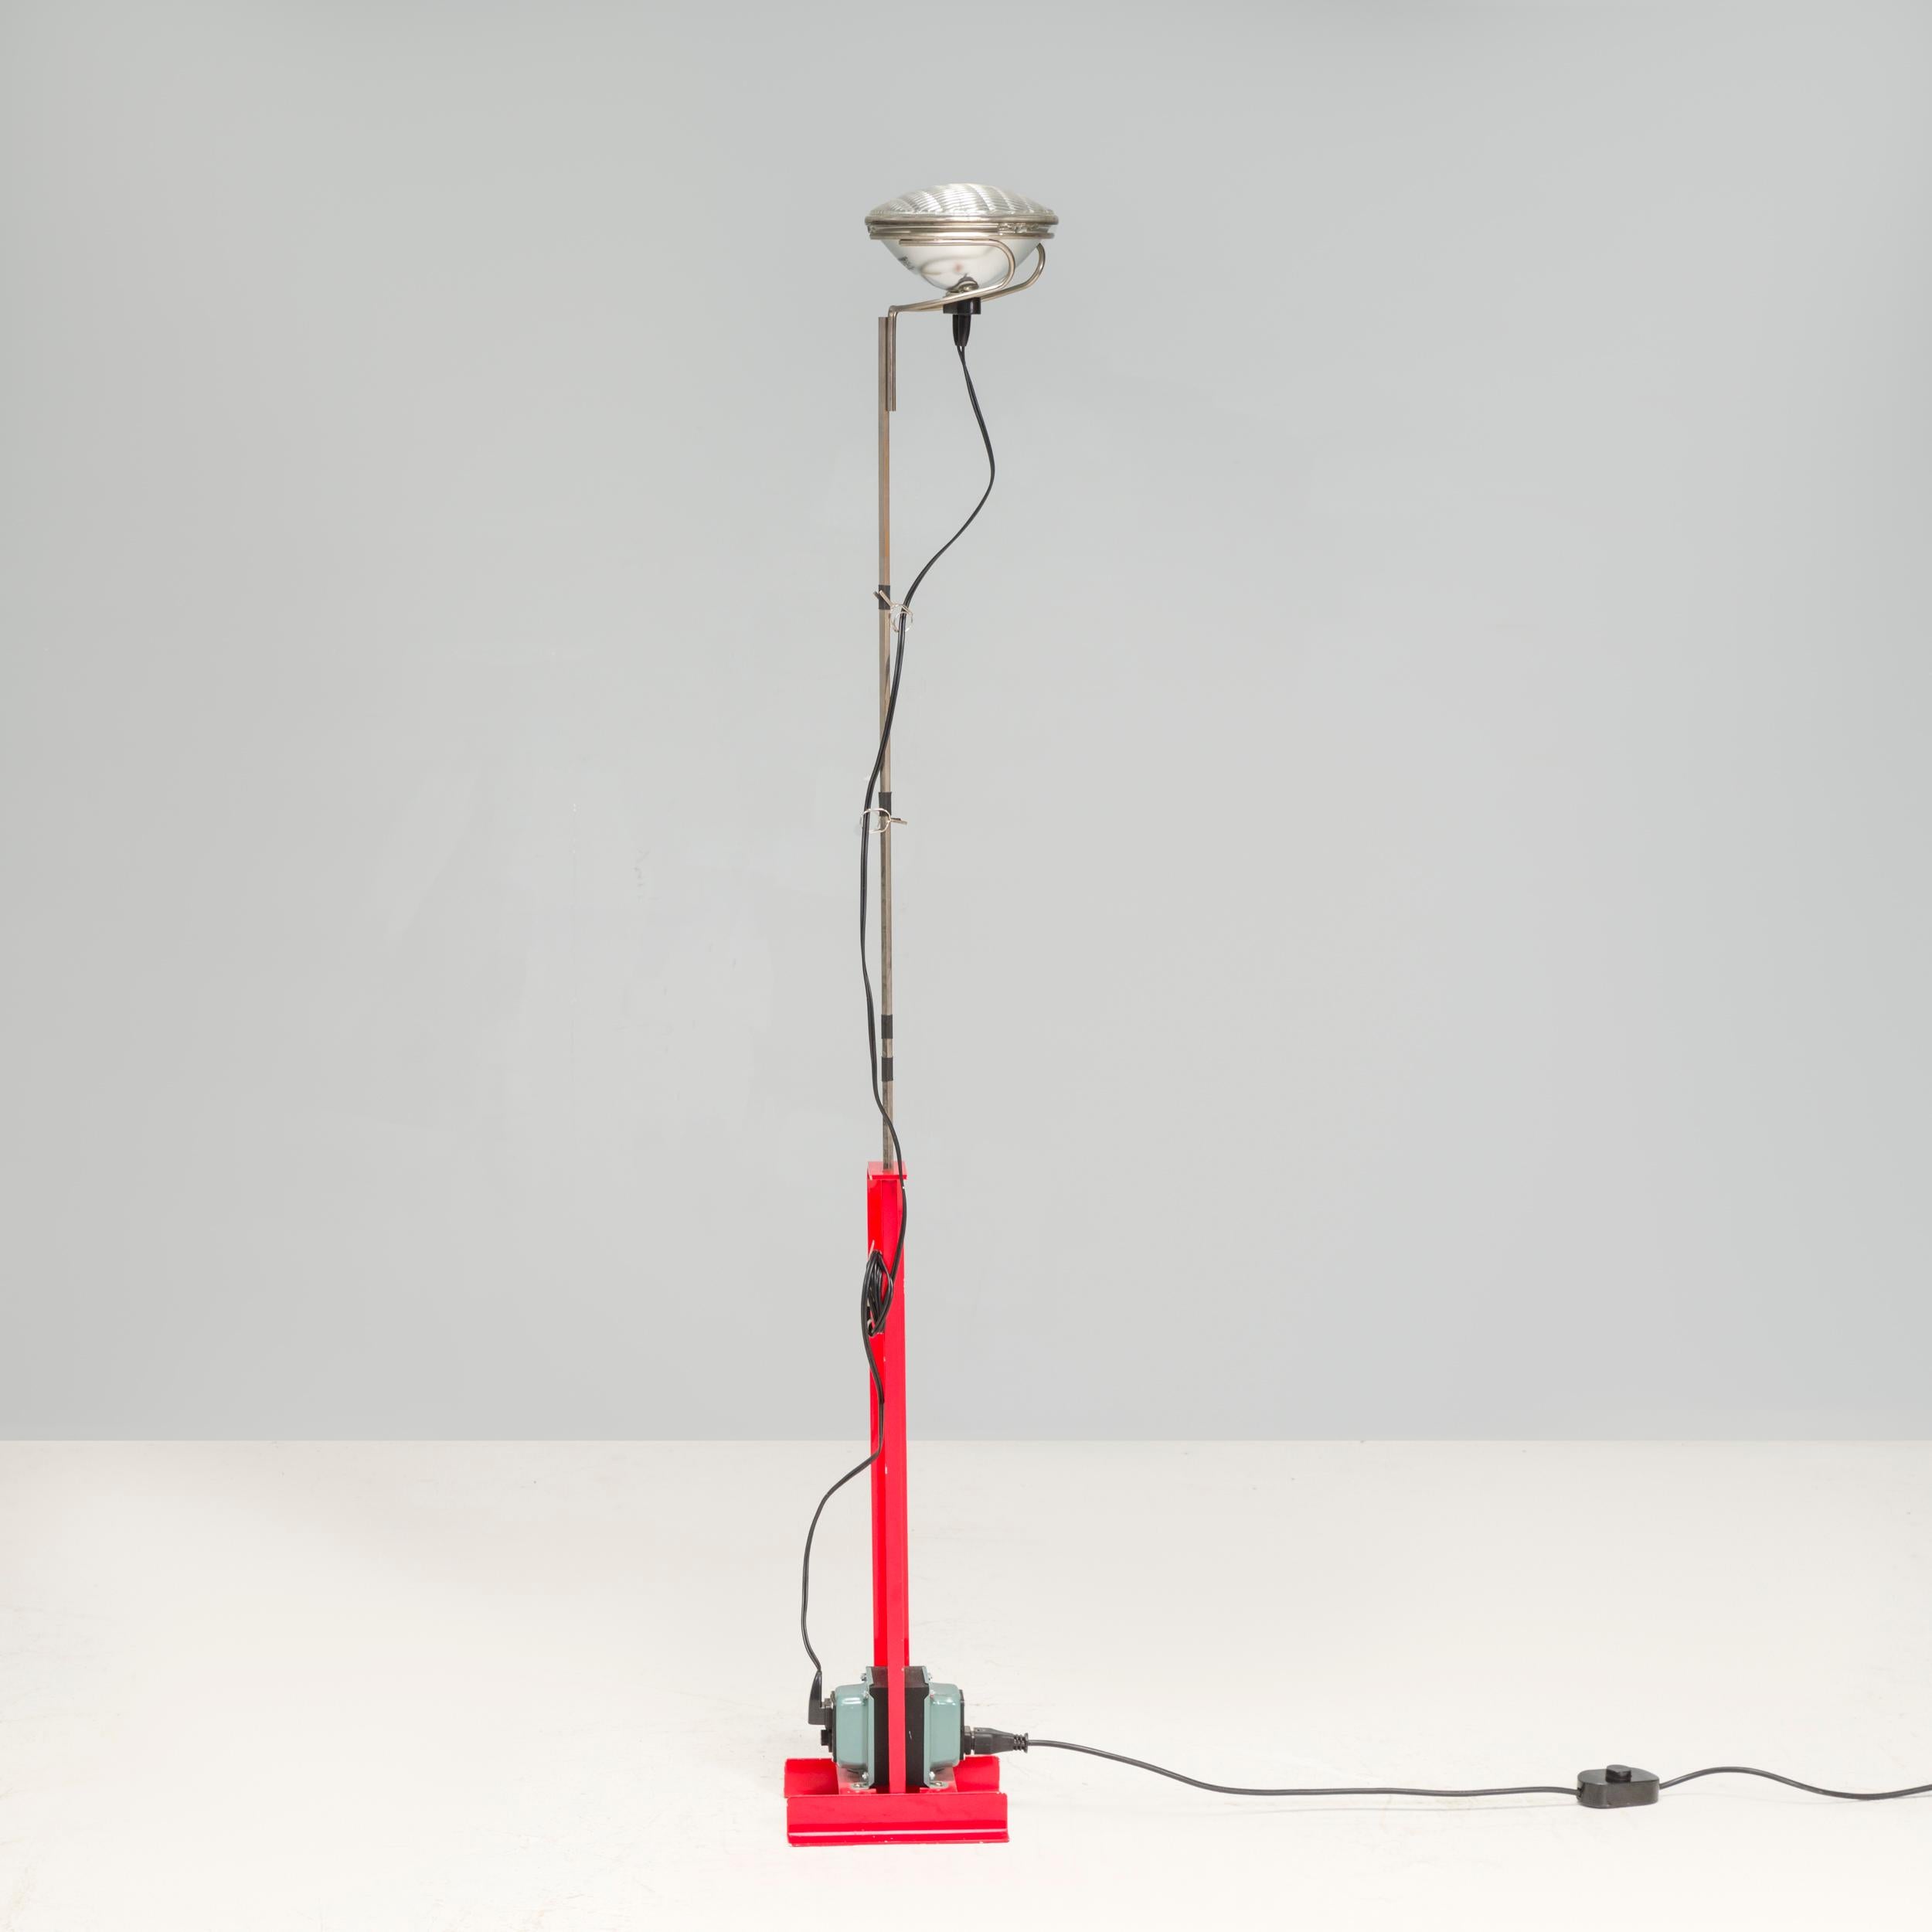 Avec sa silhouette légendaire et son diffuseur inspiré des phares de voiture, le lampadaire Toio d'Achille et Pier Giacomo Castiglioni (1962) est une icône du XXe siècle. Ce modèle figure dans la collection permanente du MoMa de New York.

Son style